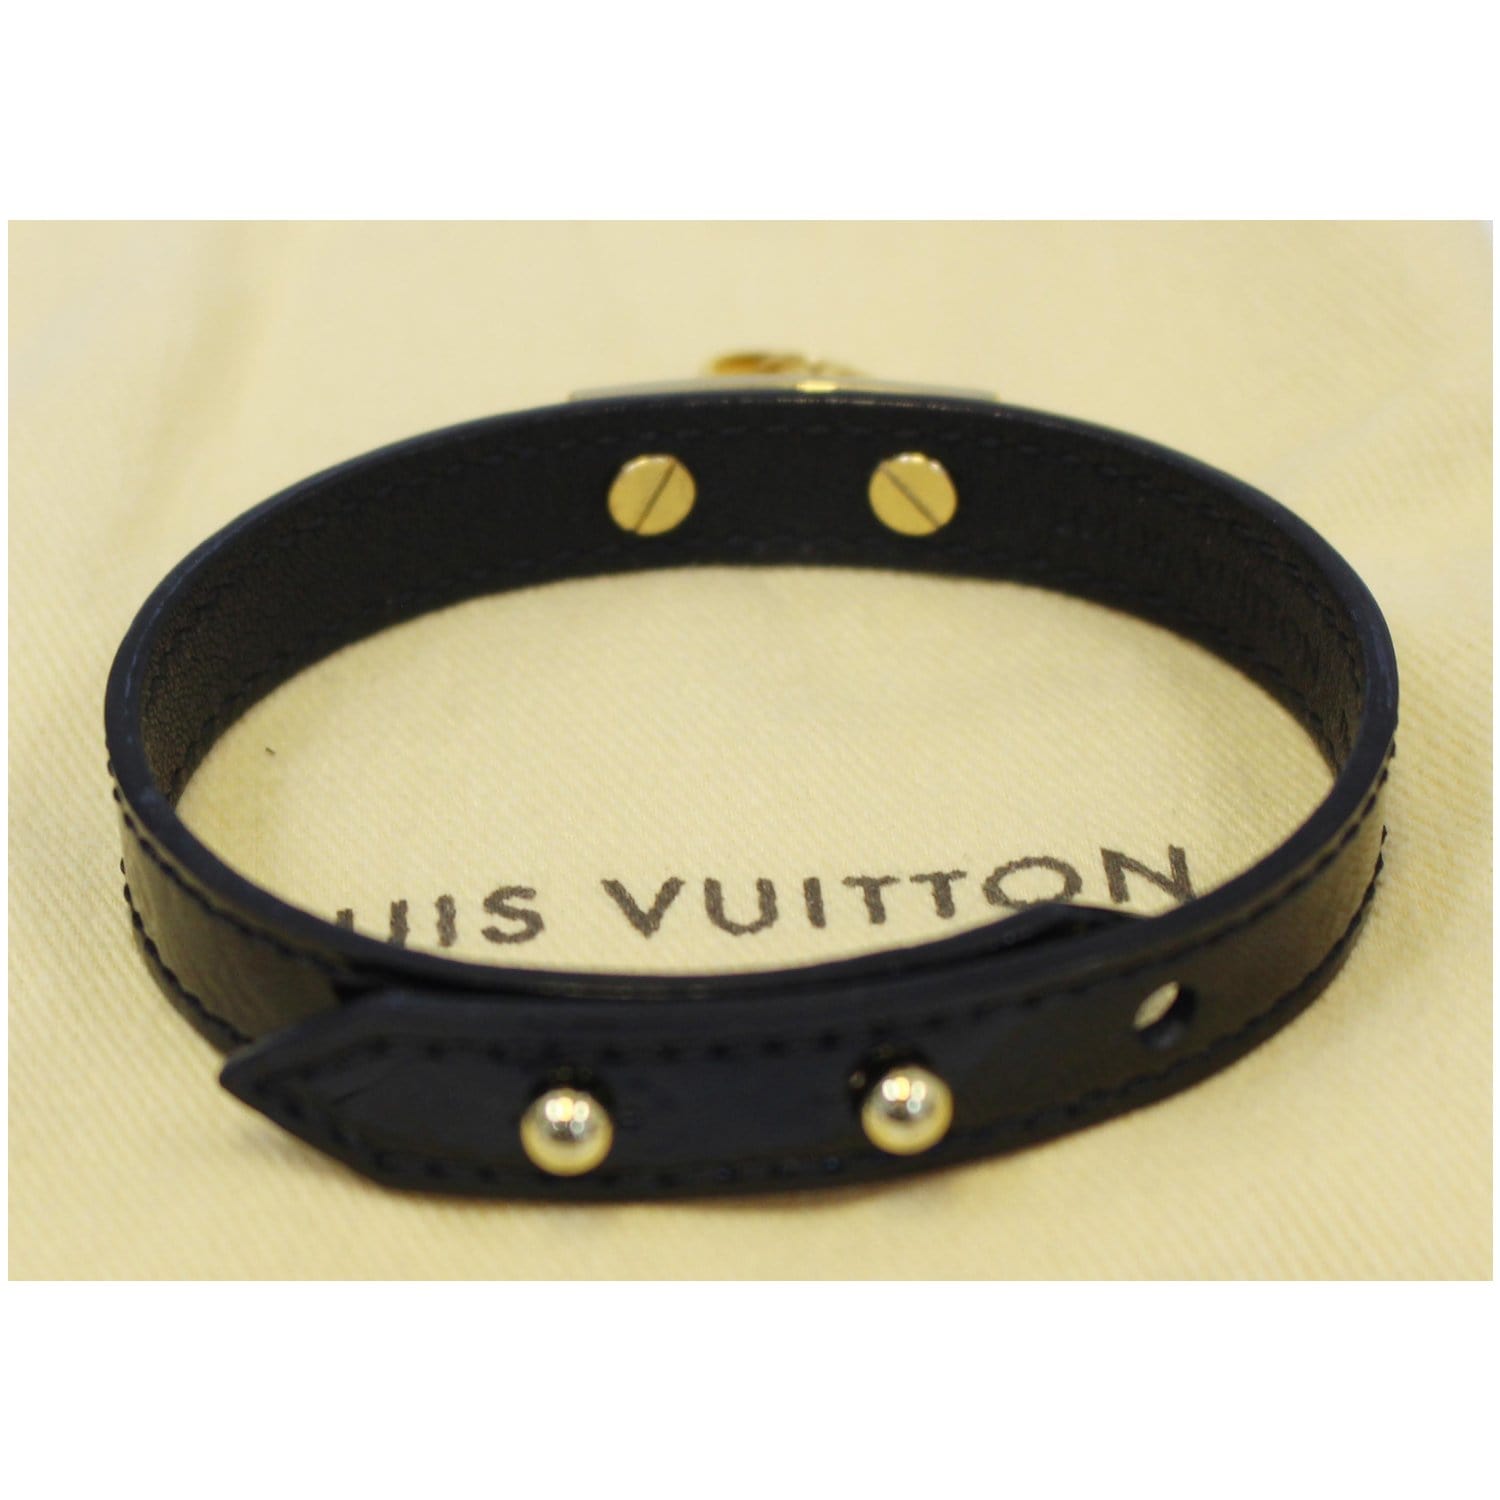 louis vuitton black leather bracelet